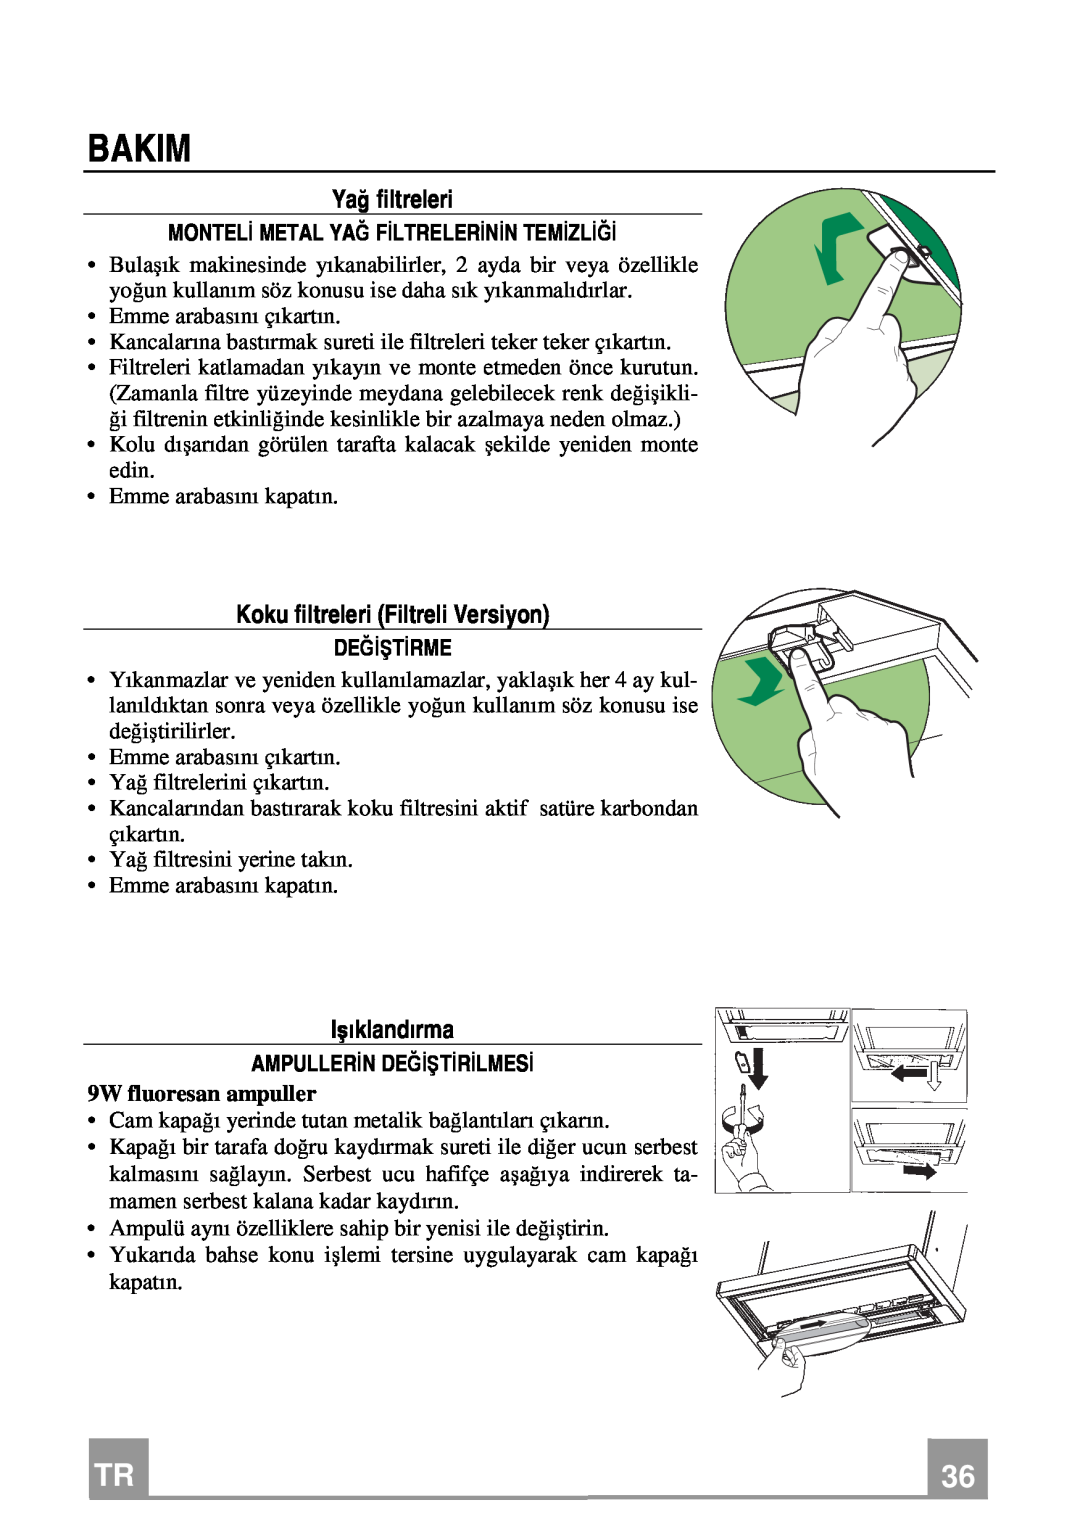 Franke Consumer Products FTC 622 manual Bakim, Yağ filtreleri, Koku filtreleri Filtreli Versiyon, Işıklandırma, Değiştirme 